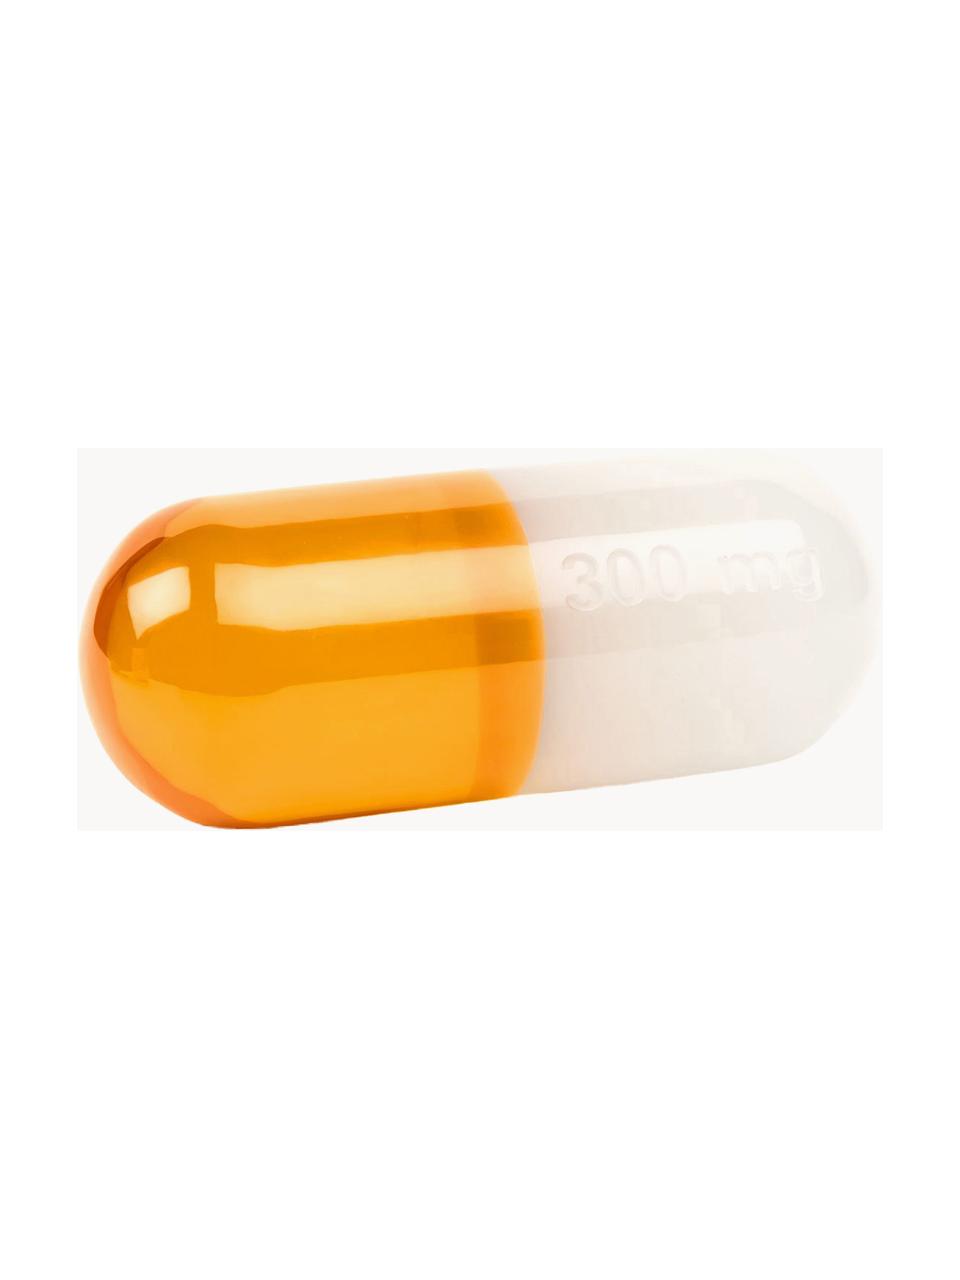 Oggetto decorativo Pill, Poliacrilico, lucido, Bianco, arancione, Larg. 24 x Alt. 12 cm